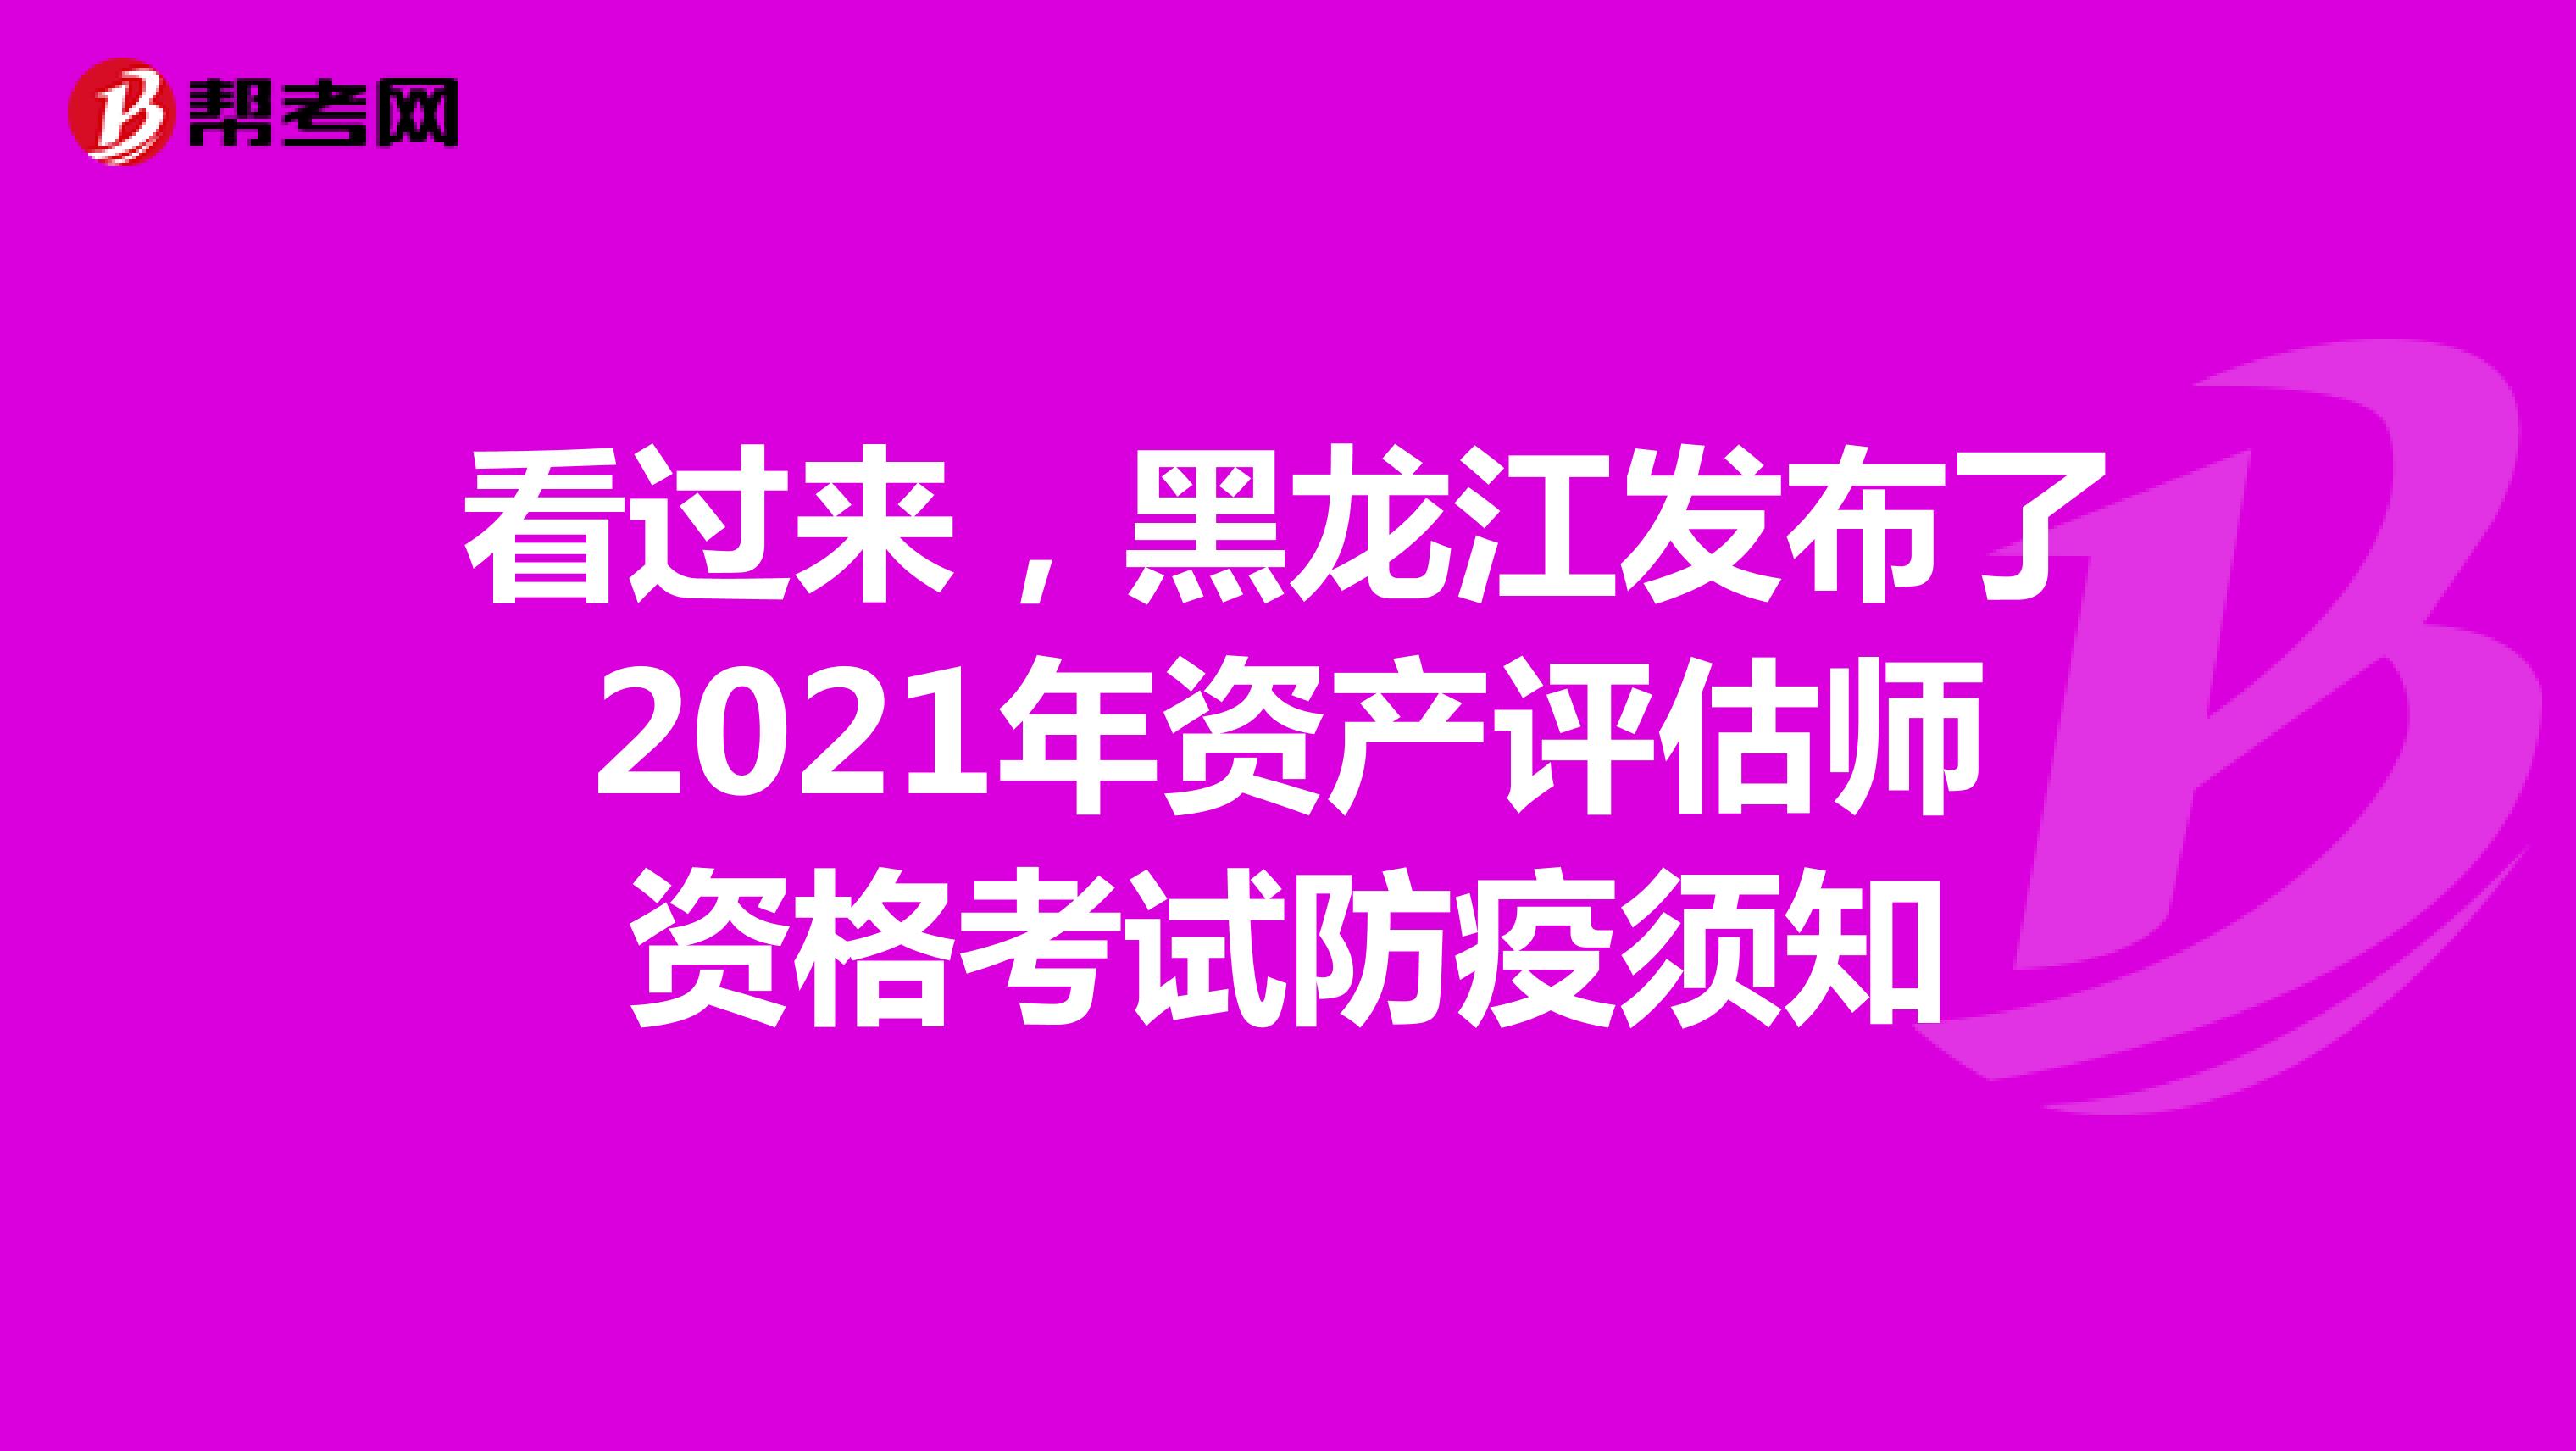 看过来，黑龙江发布了2021年资产评估师资格考试防疫须知